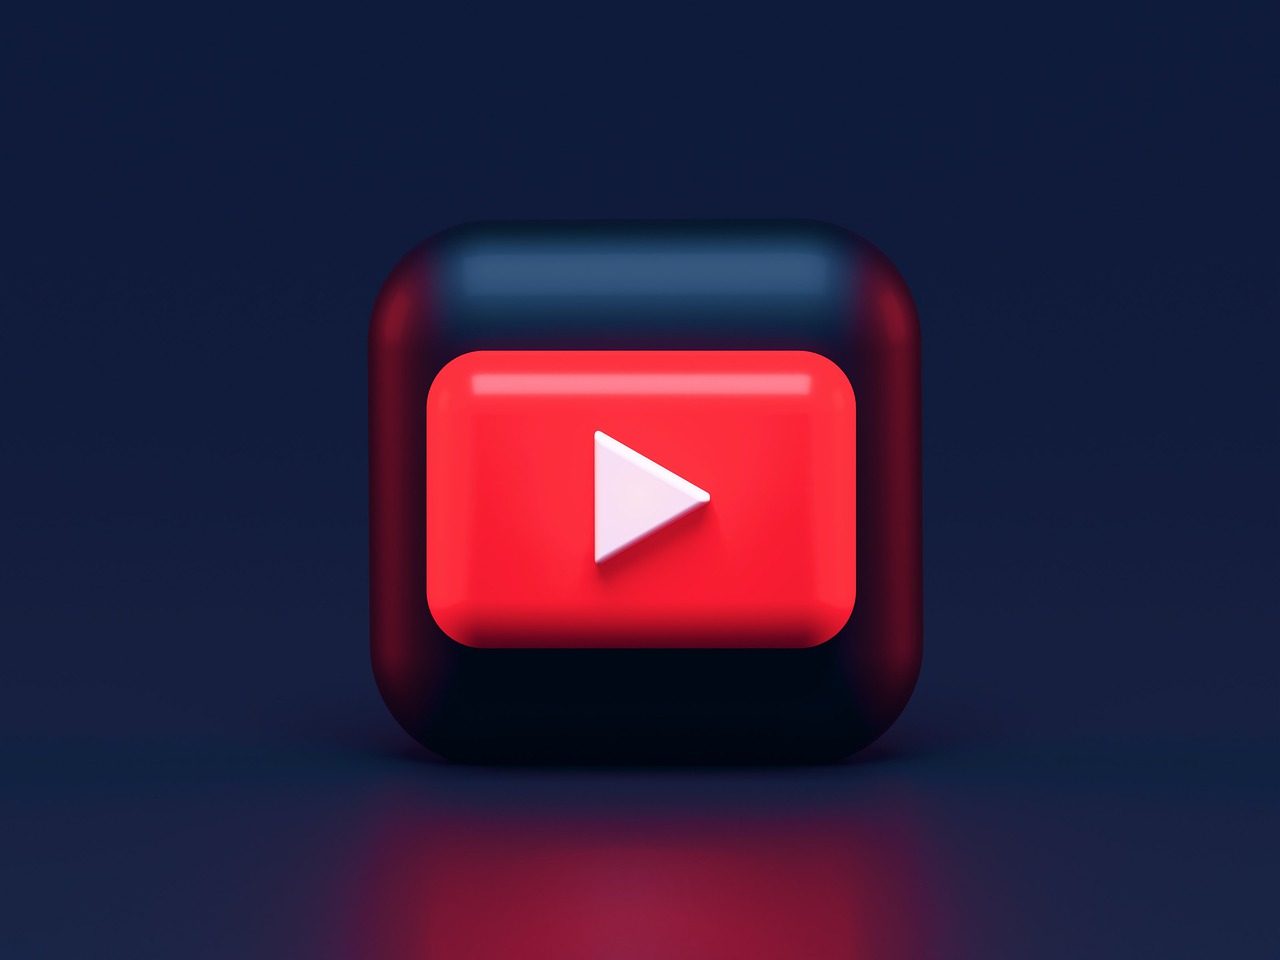 Το YouTube αρχίζει να απαιτεί από χρήστες Premium συνδρομή για αναπαραγωγή βίντεο στην 4K ανάλυση